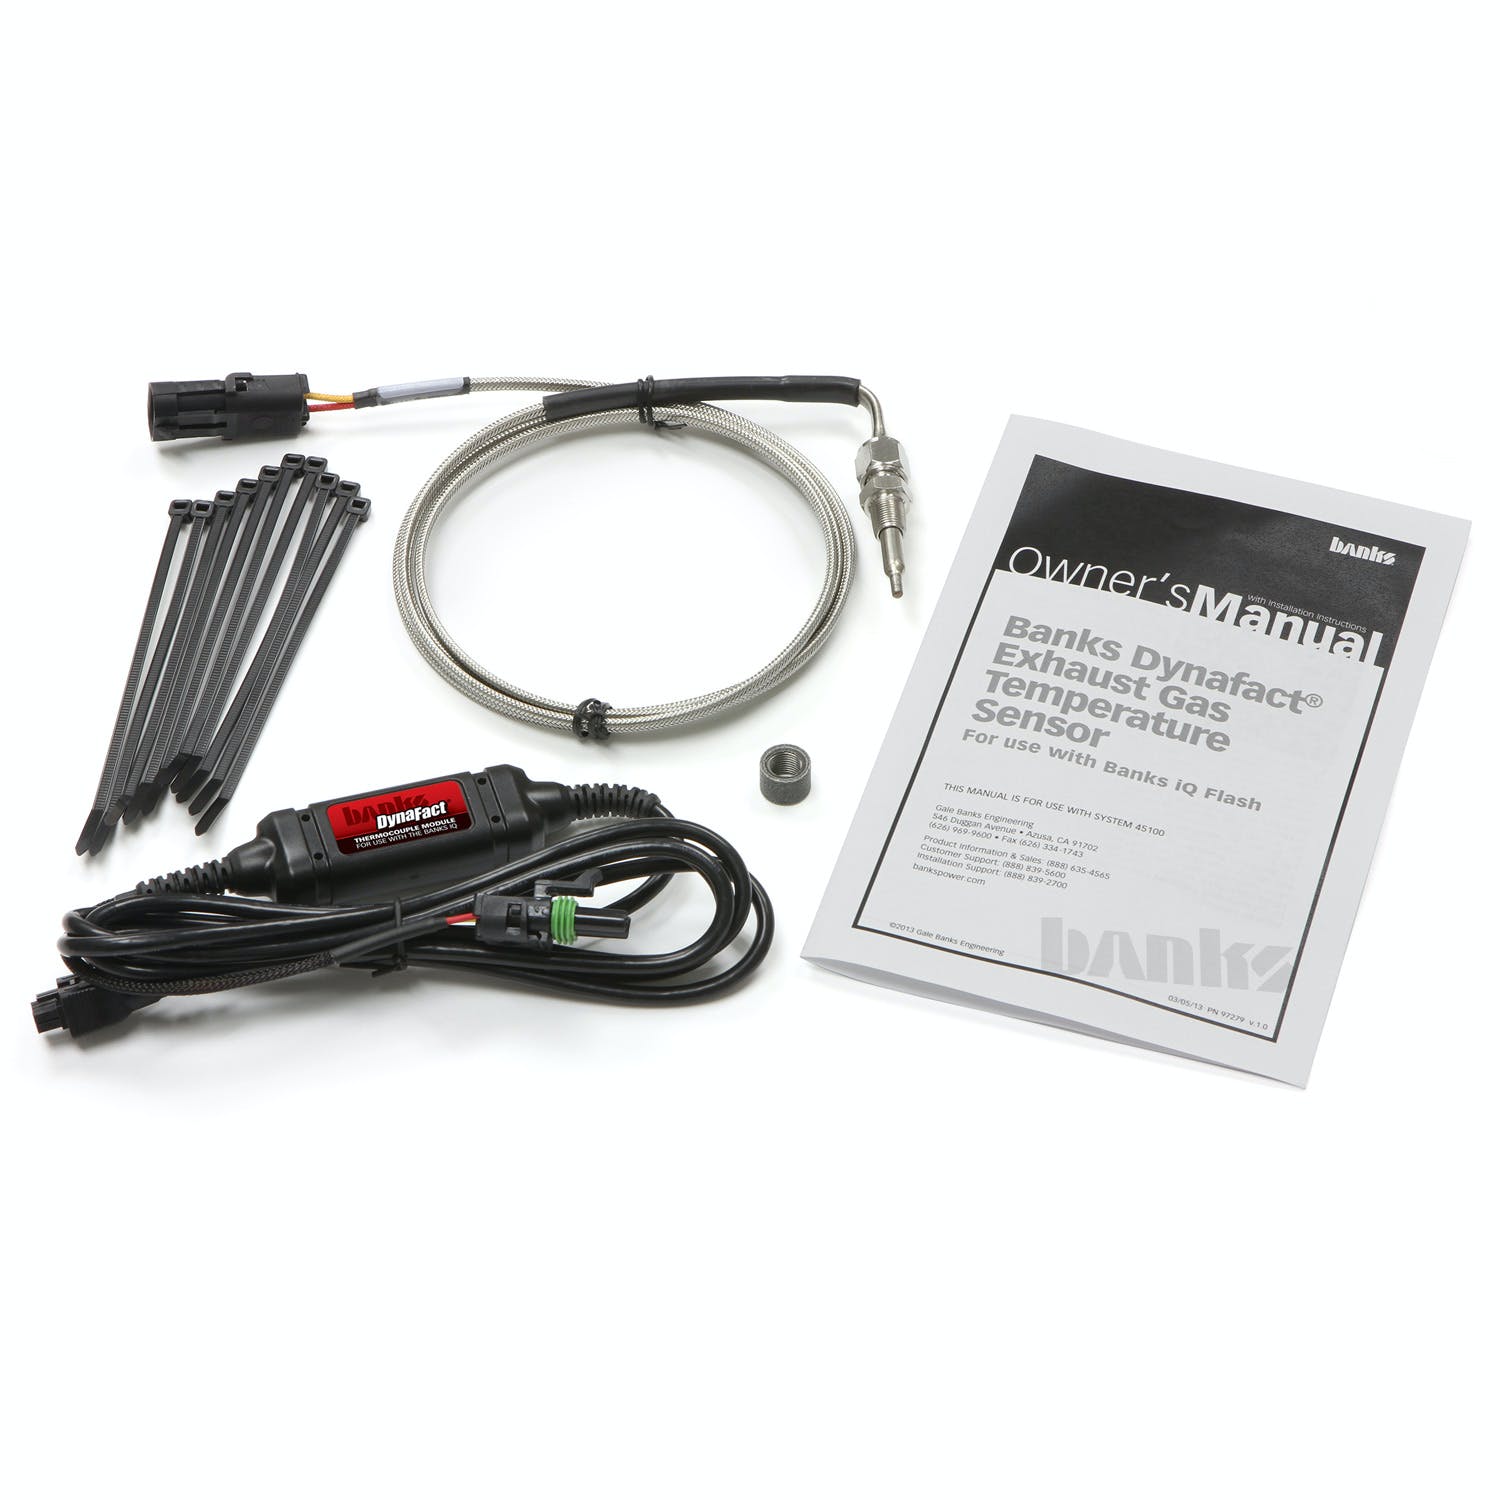 Banks Power 45100 Dynafact; Thermocouple Kit-use with Banks iQ